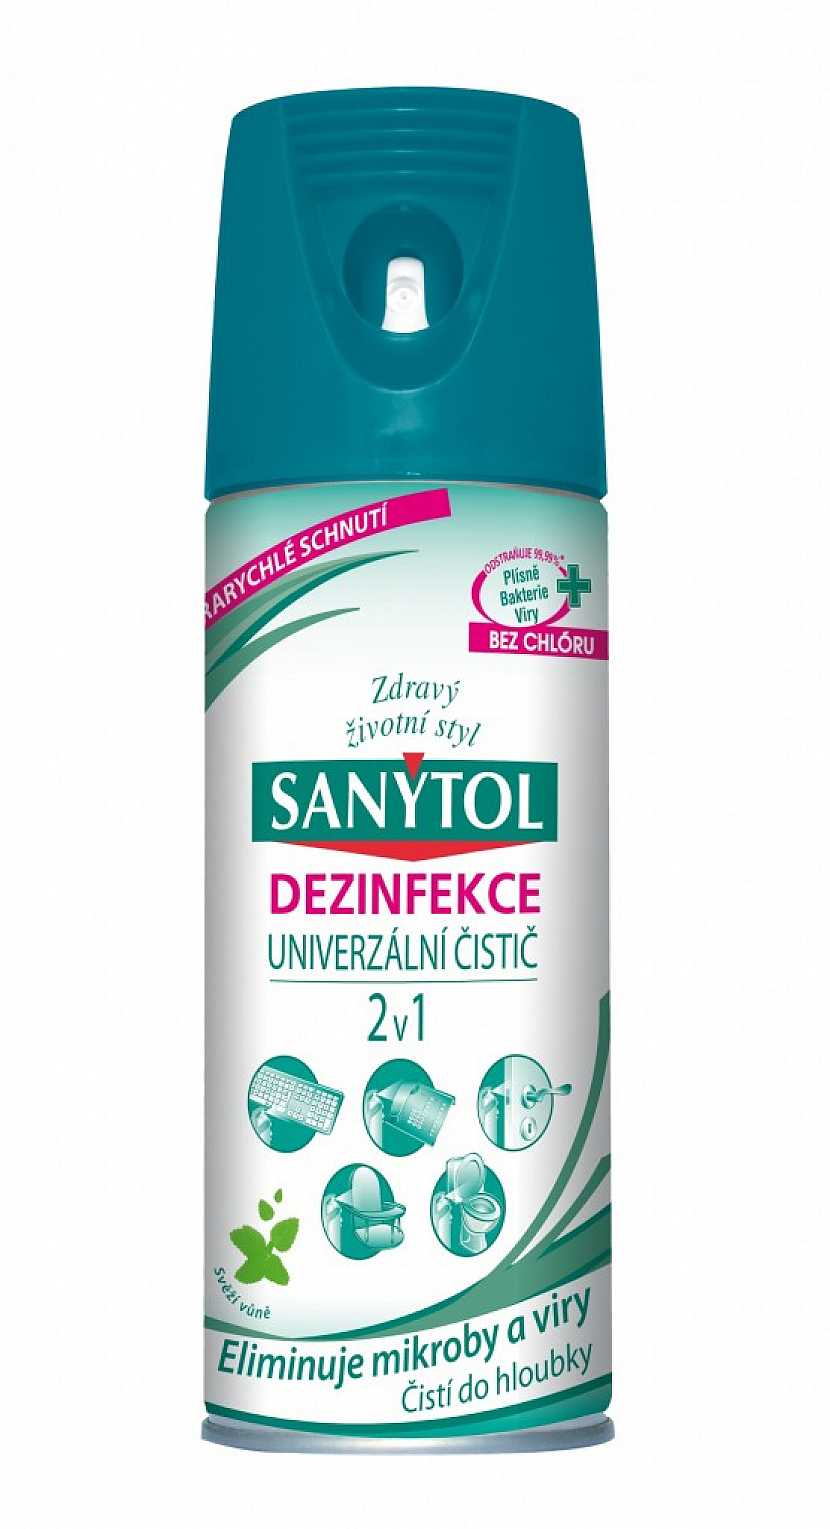 Dezinfekční čistič Sanytol 2v1… stačí nastříkat a je vydezinfikováno